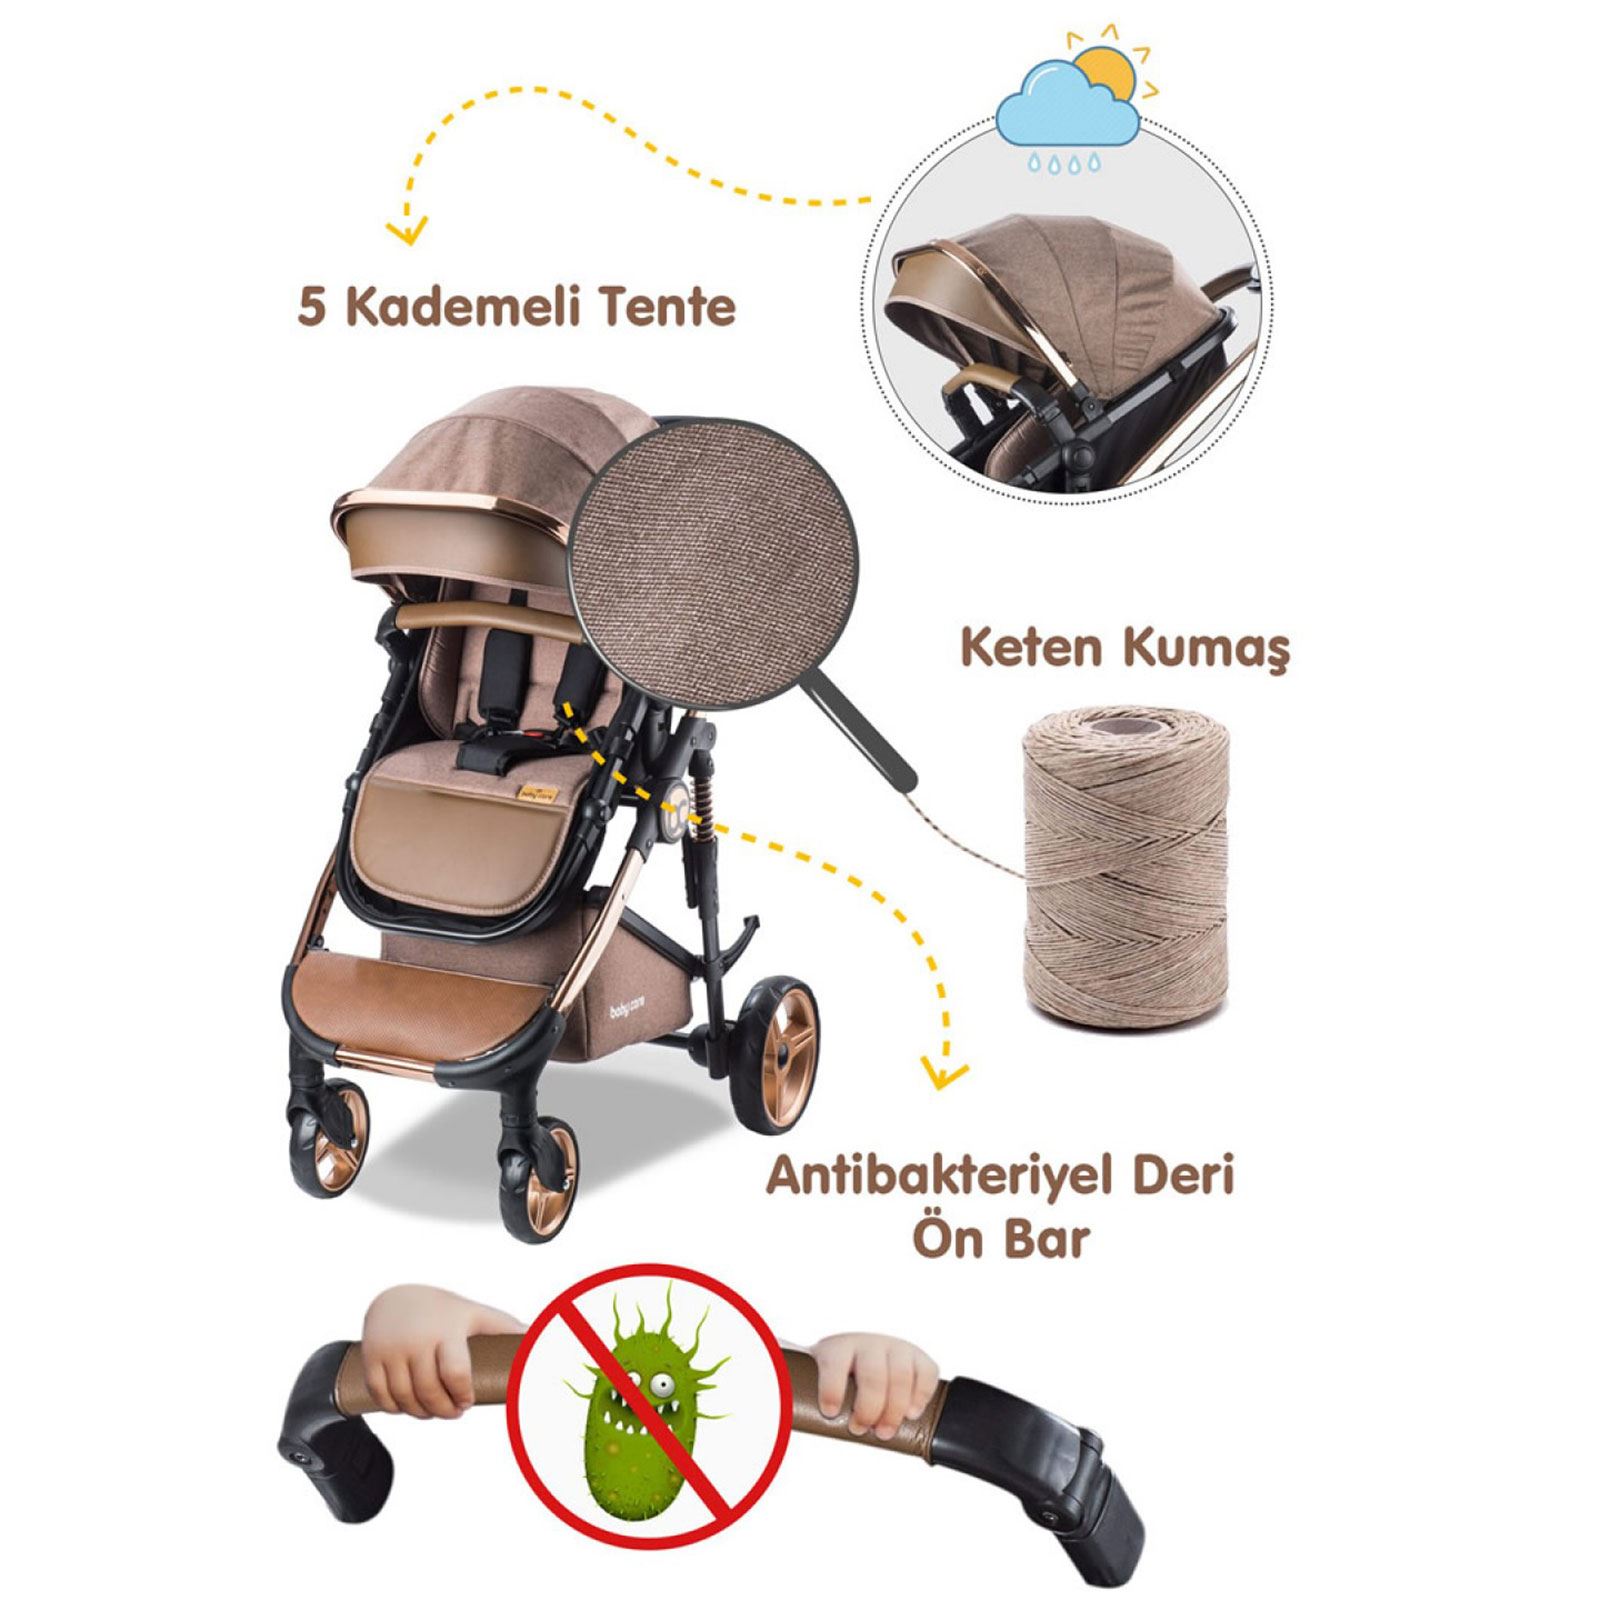 Babycare Colarado Chrome Travel Sistem Bebek Arabası Kahve